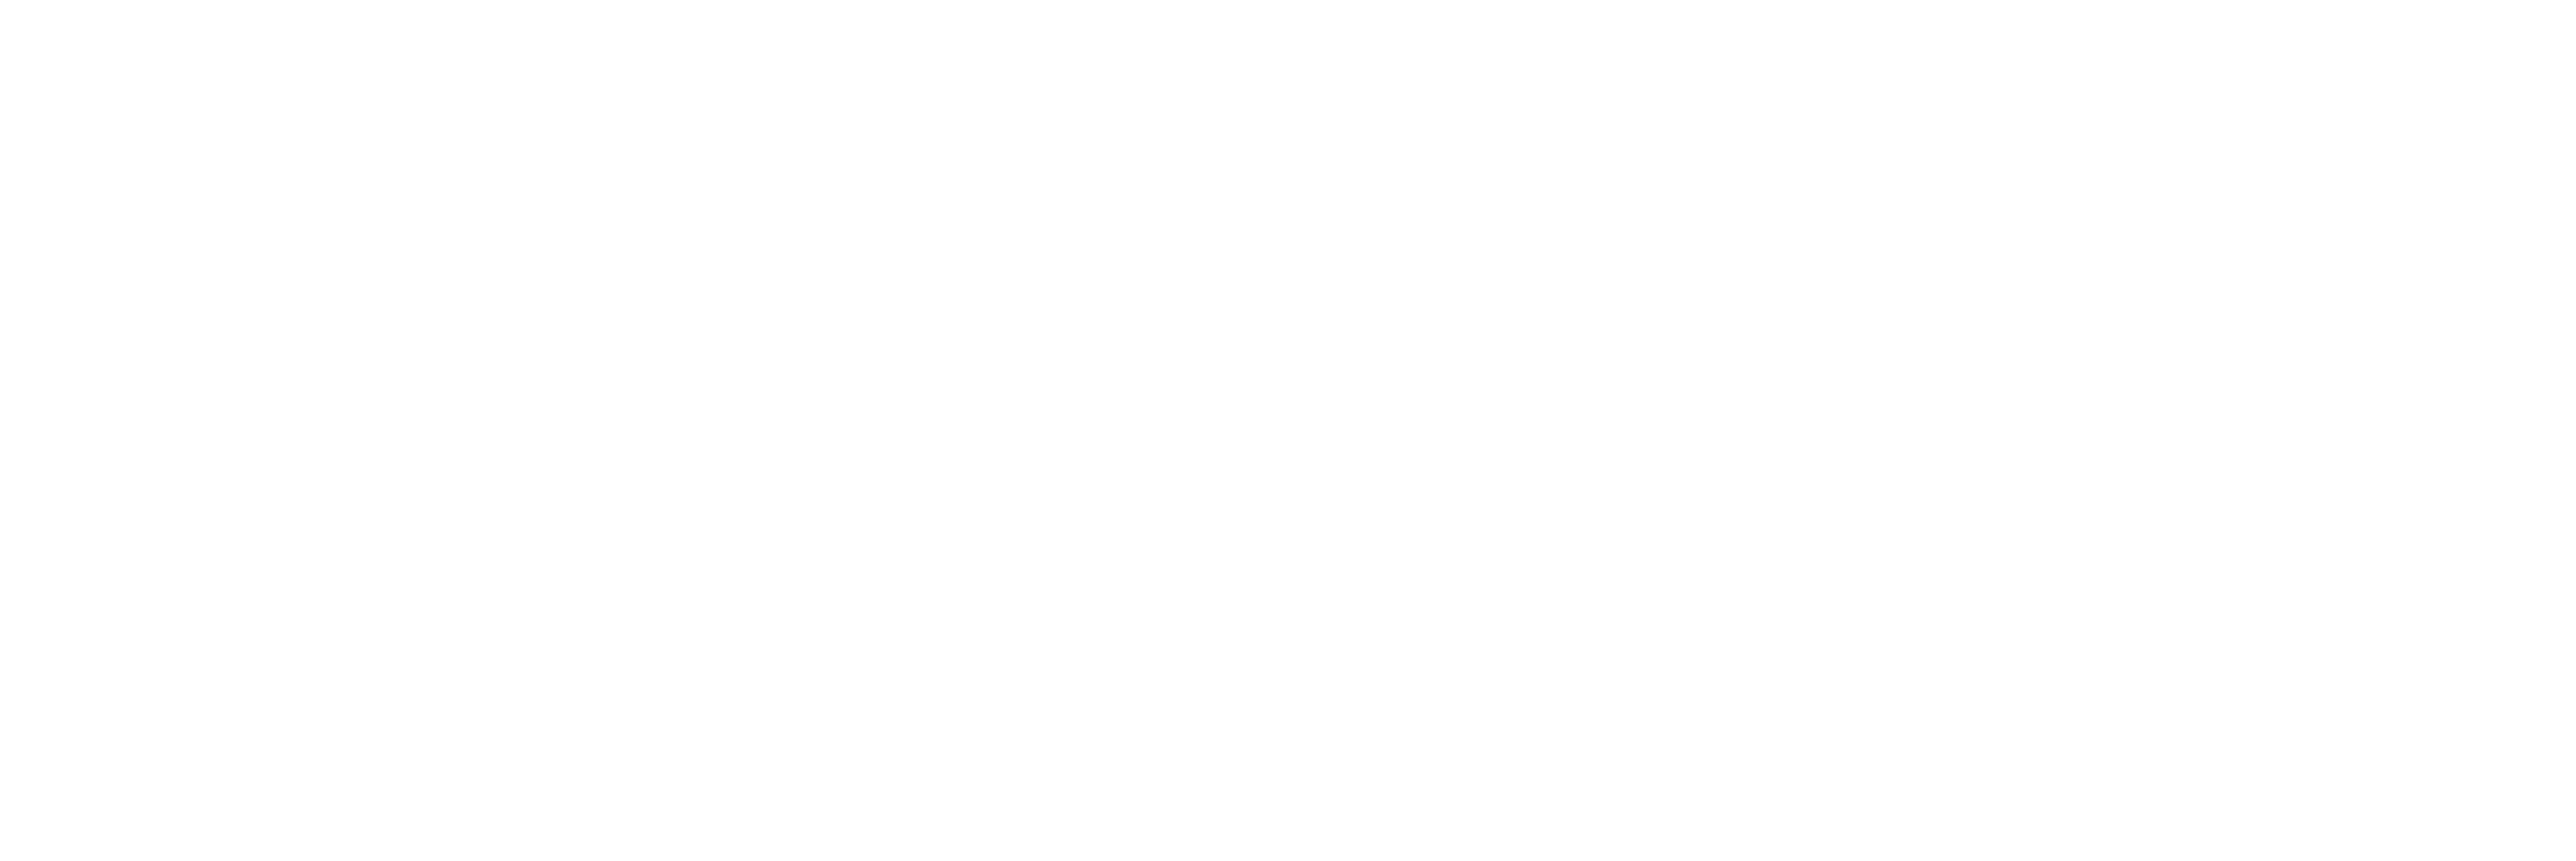 Restaurant Laplace